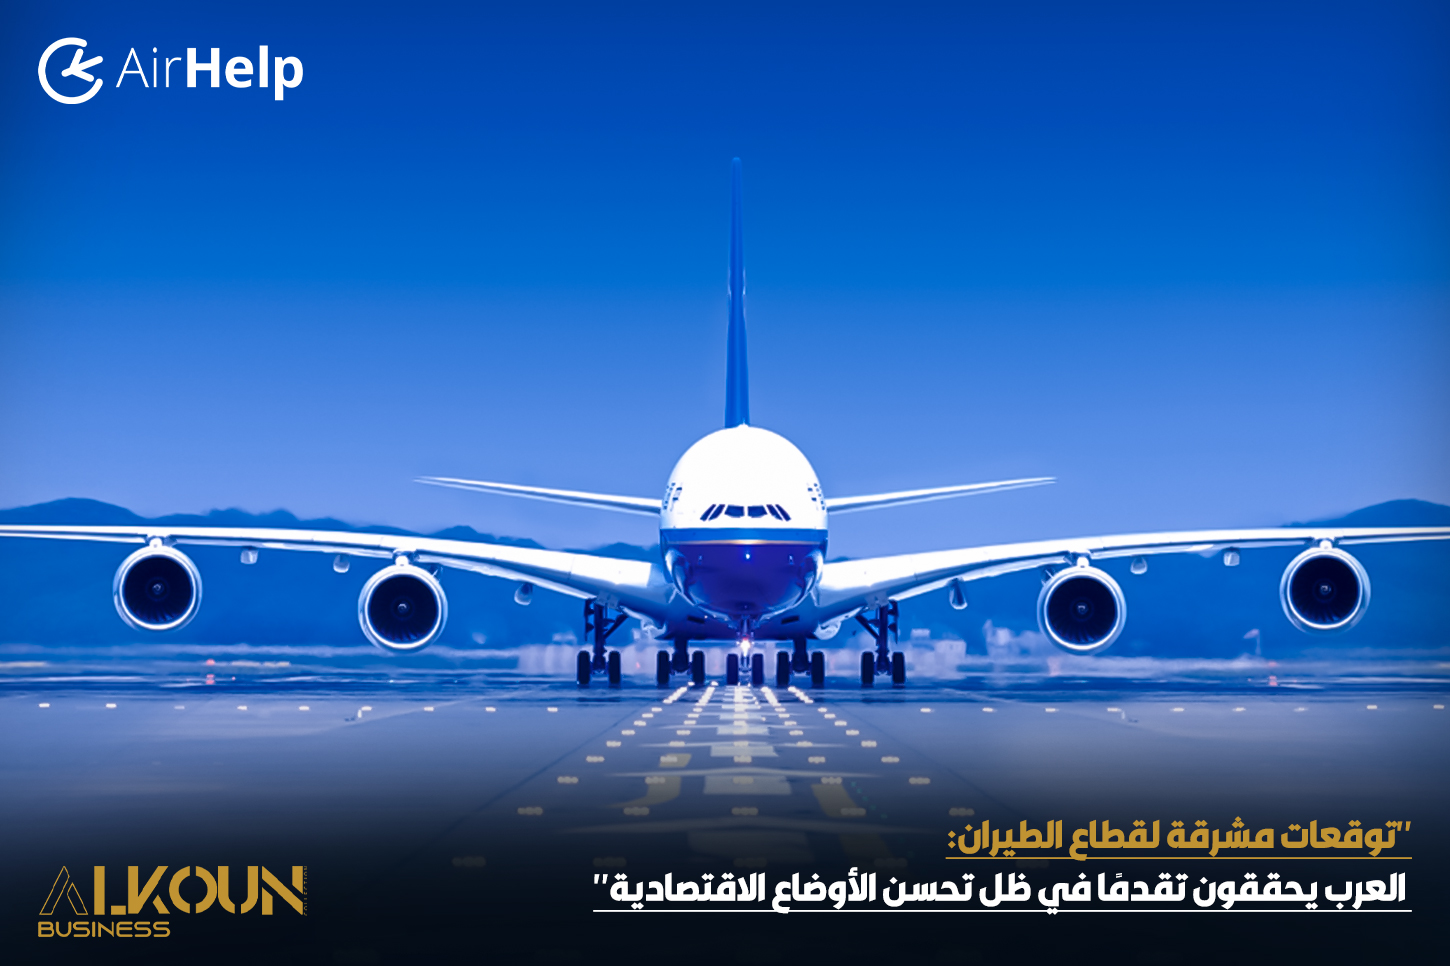 "توقعات مشرقة لقطاع الطيران: العرب يحققون تقدمًا في ظل تحسن الأوضاع الاقتصادية"